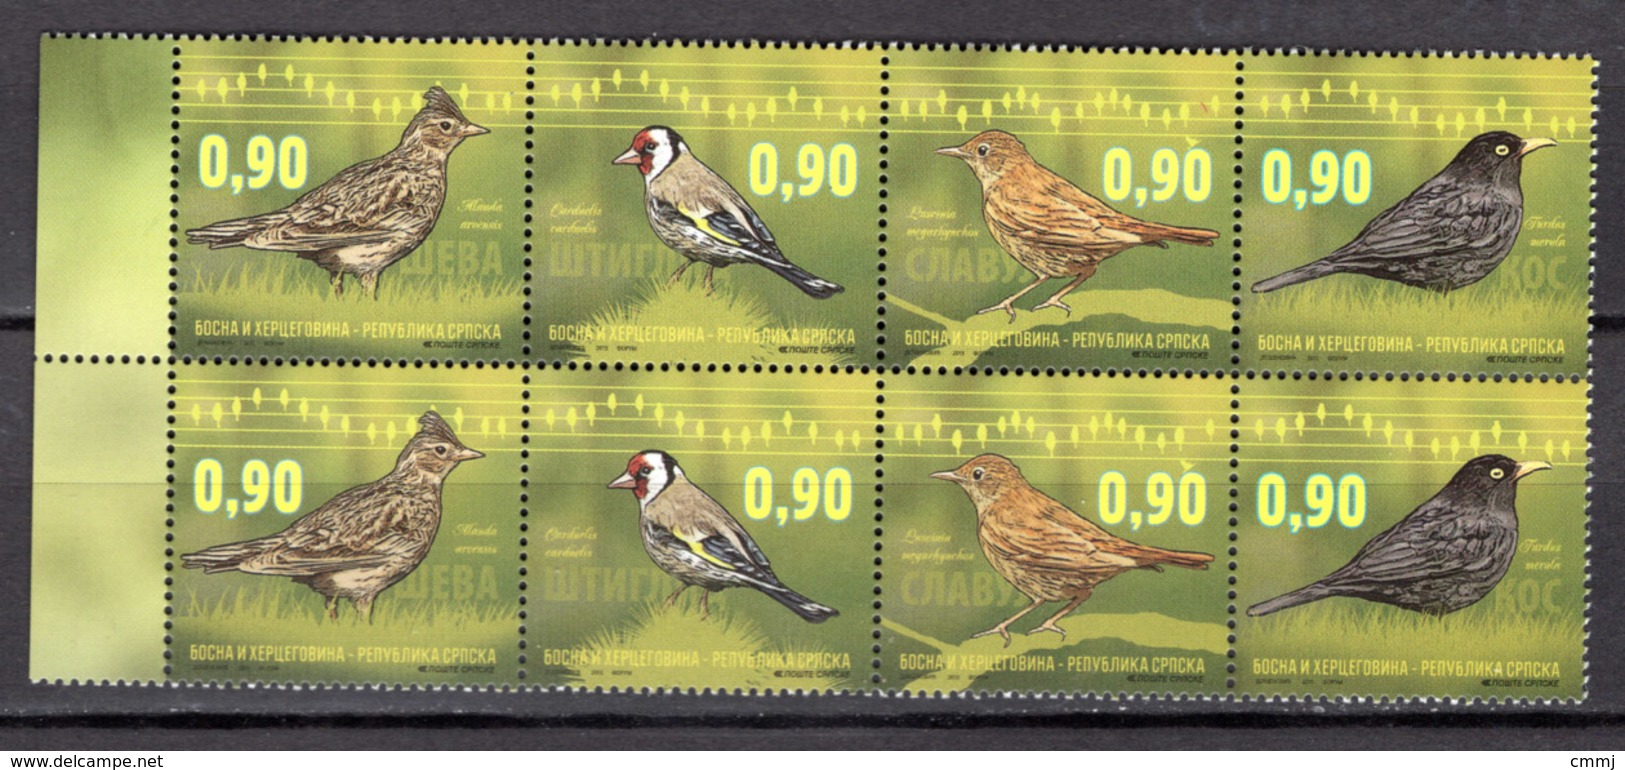 BIRDS - 2015 - BOSNIA OCC. SERBIA -  Mi.. Nr.  661/664 - NH - (CW4755.31) - Serbia